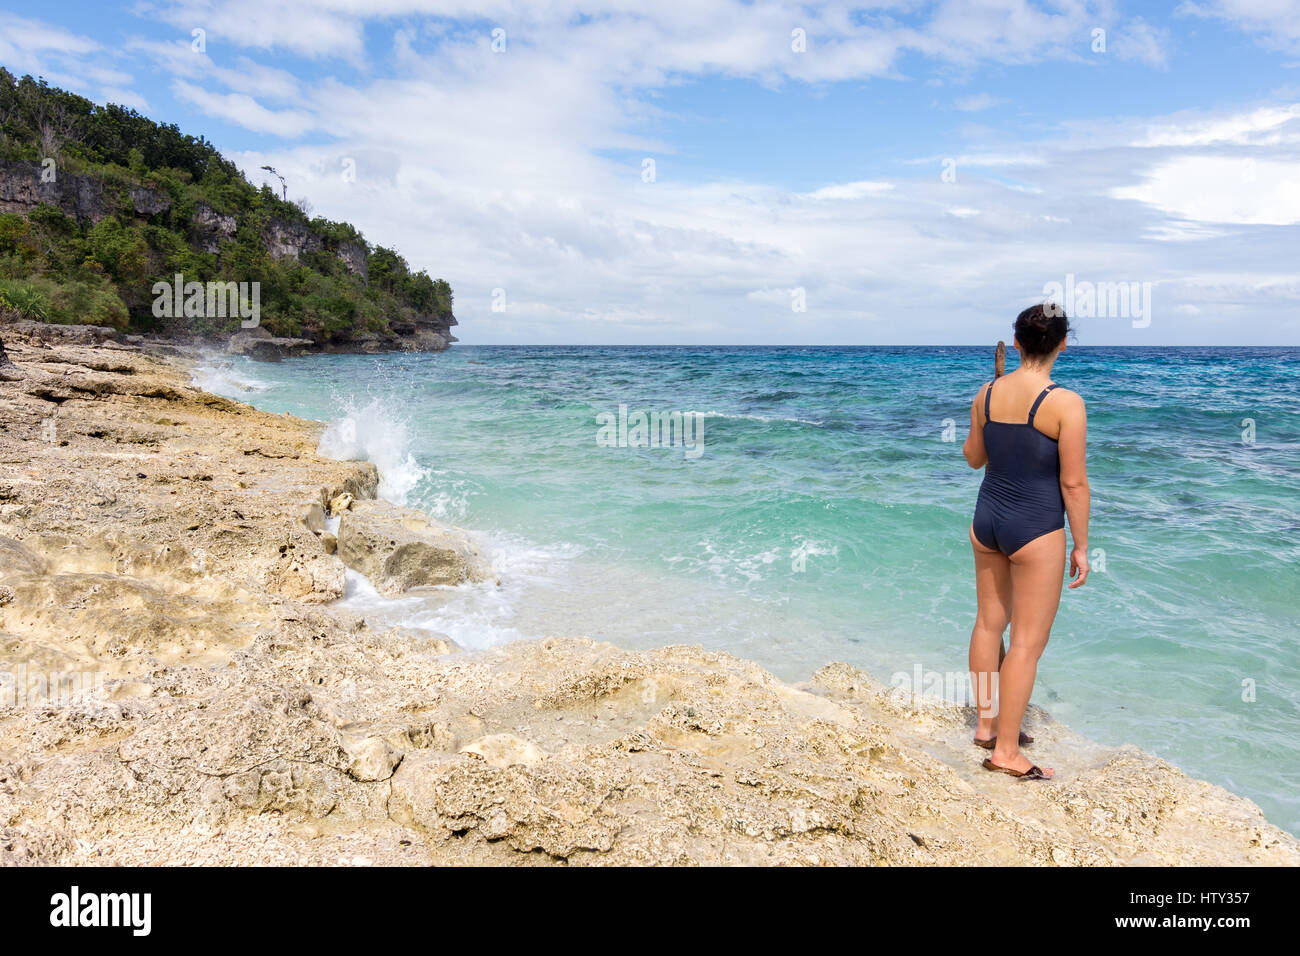 Jeune femme dans un maillot bleu veille sur un secret vide paradise Coral Beach. Banque D'Images